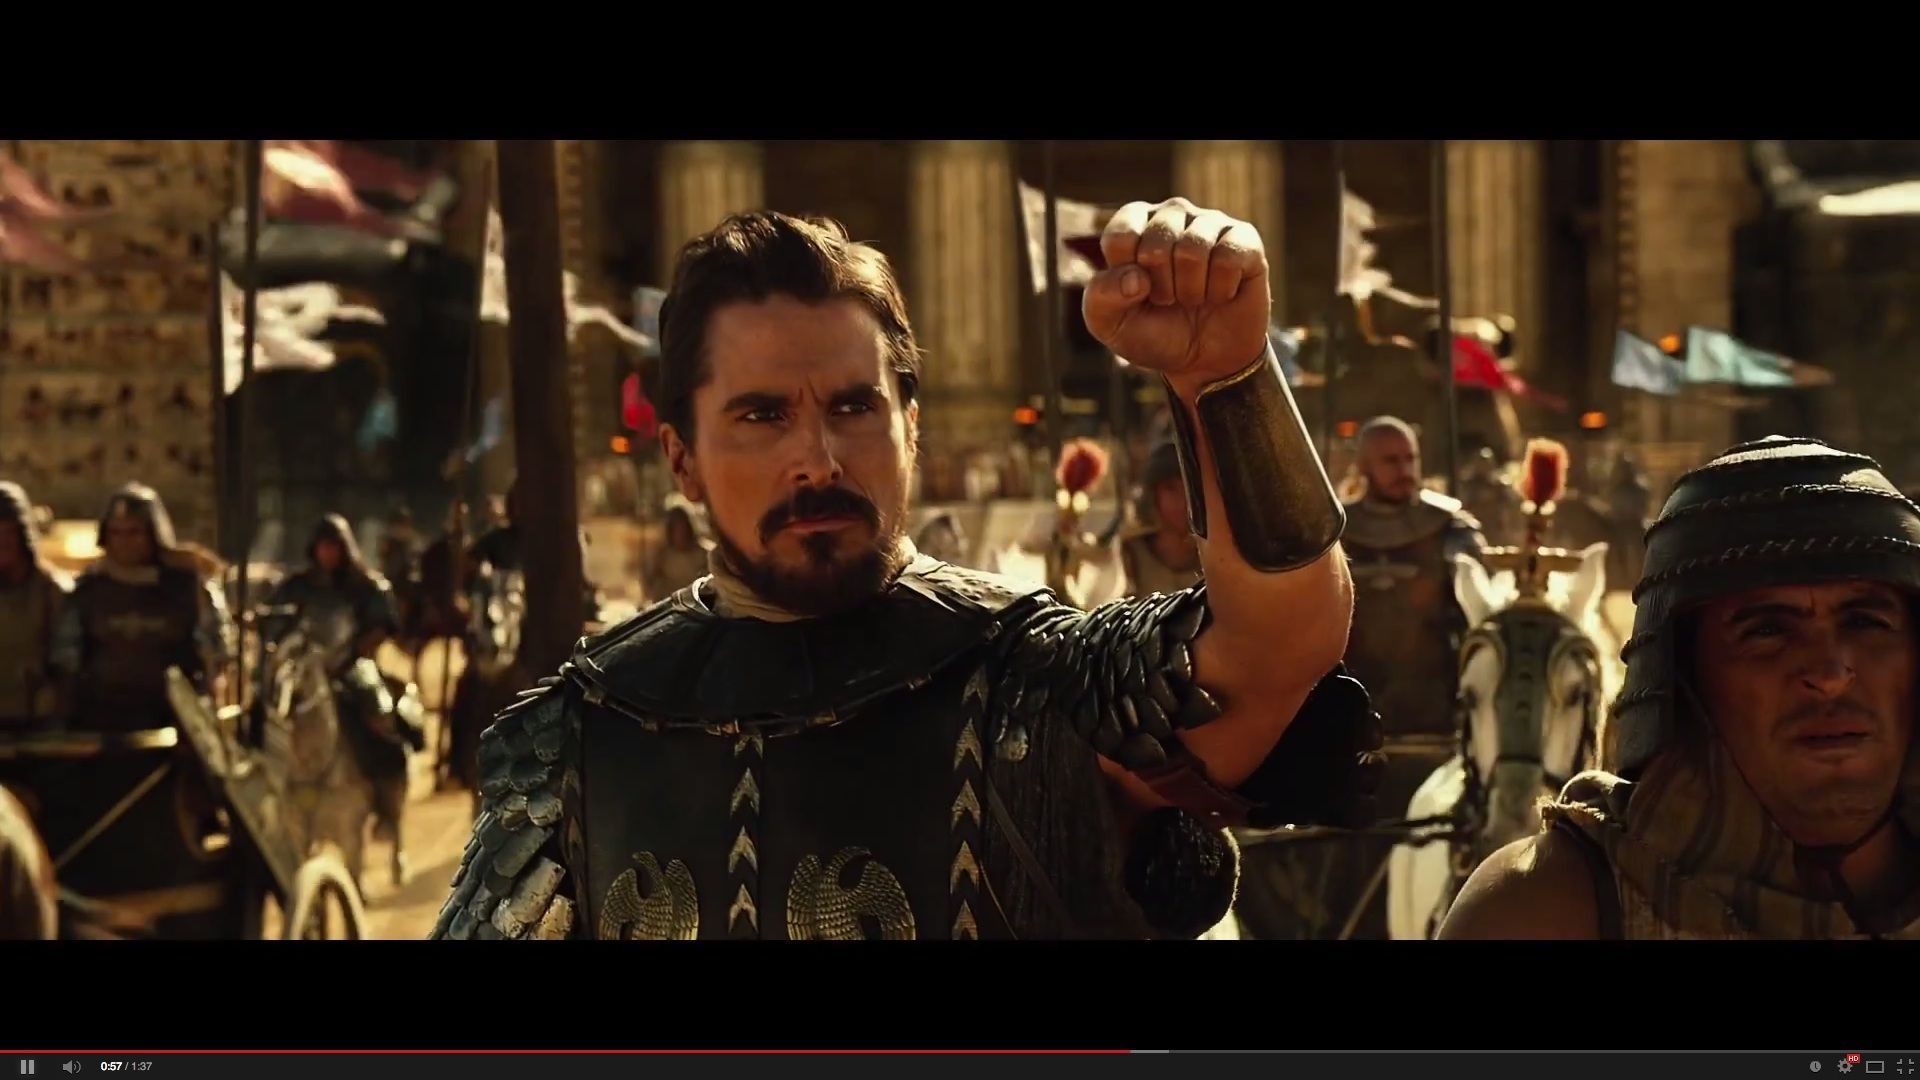 Christian Bale incarne Moïse dans "Exodus", péplum historique signé Ridley Scott